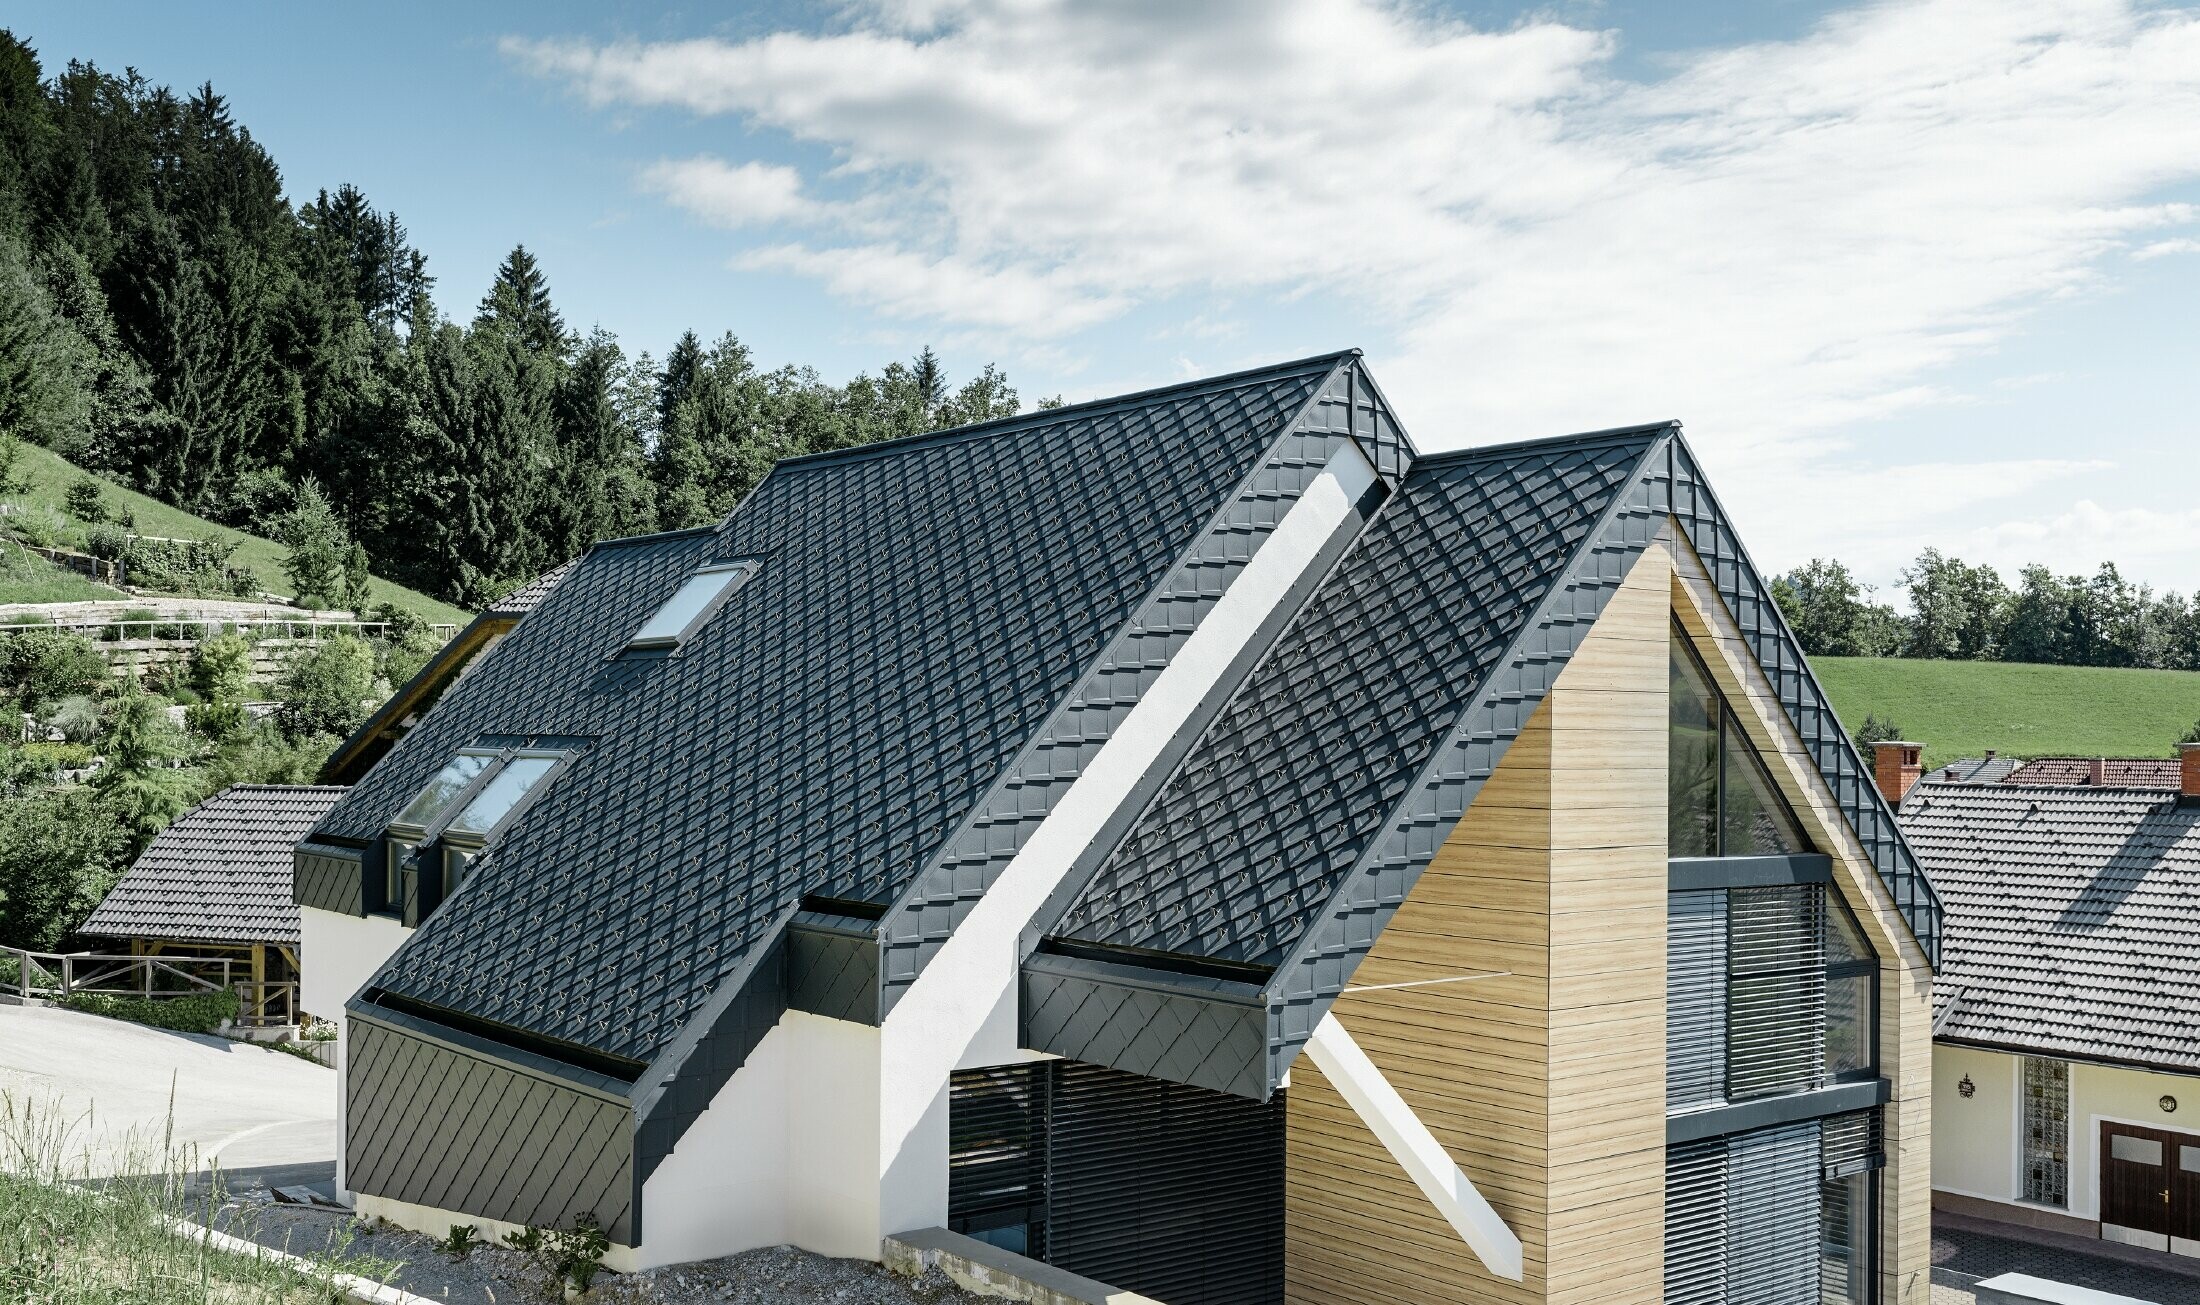 Dom jednorodzinny z dachem dwuspadowym bez występu dachowego, z elewacją o wyglądzie drewna i dachem aluminiowym w kolorze antracytowym